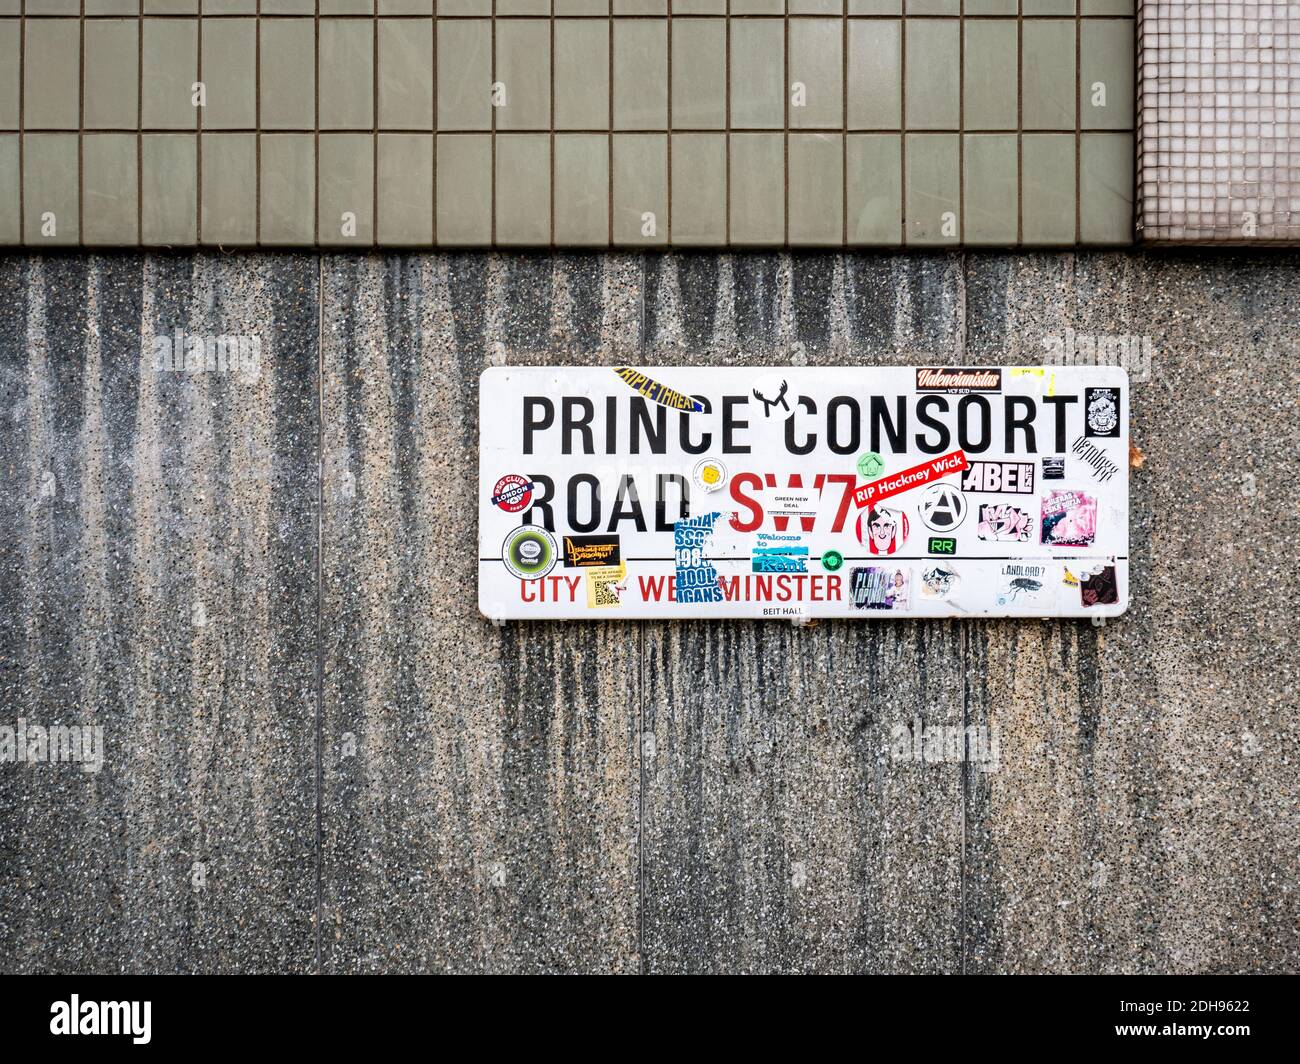 Prince Consort Road, Londra SW7. Un cartello con etichetta per Prince Consort Road che ospita l'Imperial College e il Royal College of Music. Foto Stock